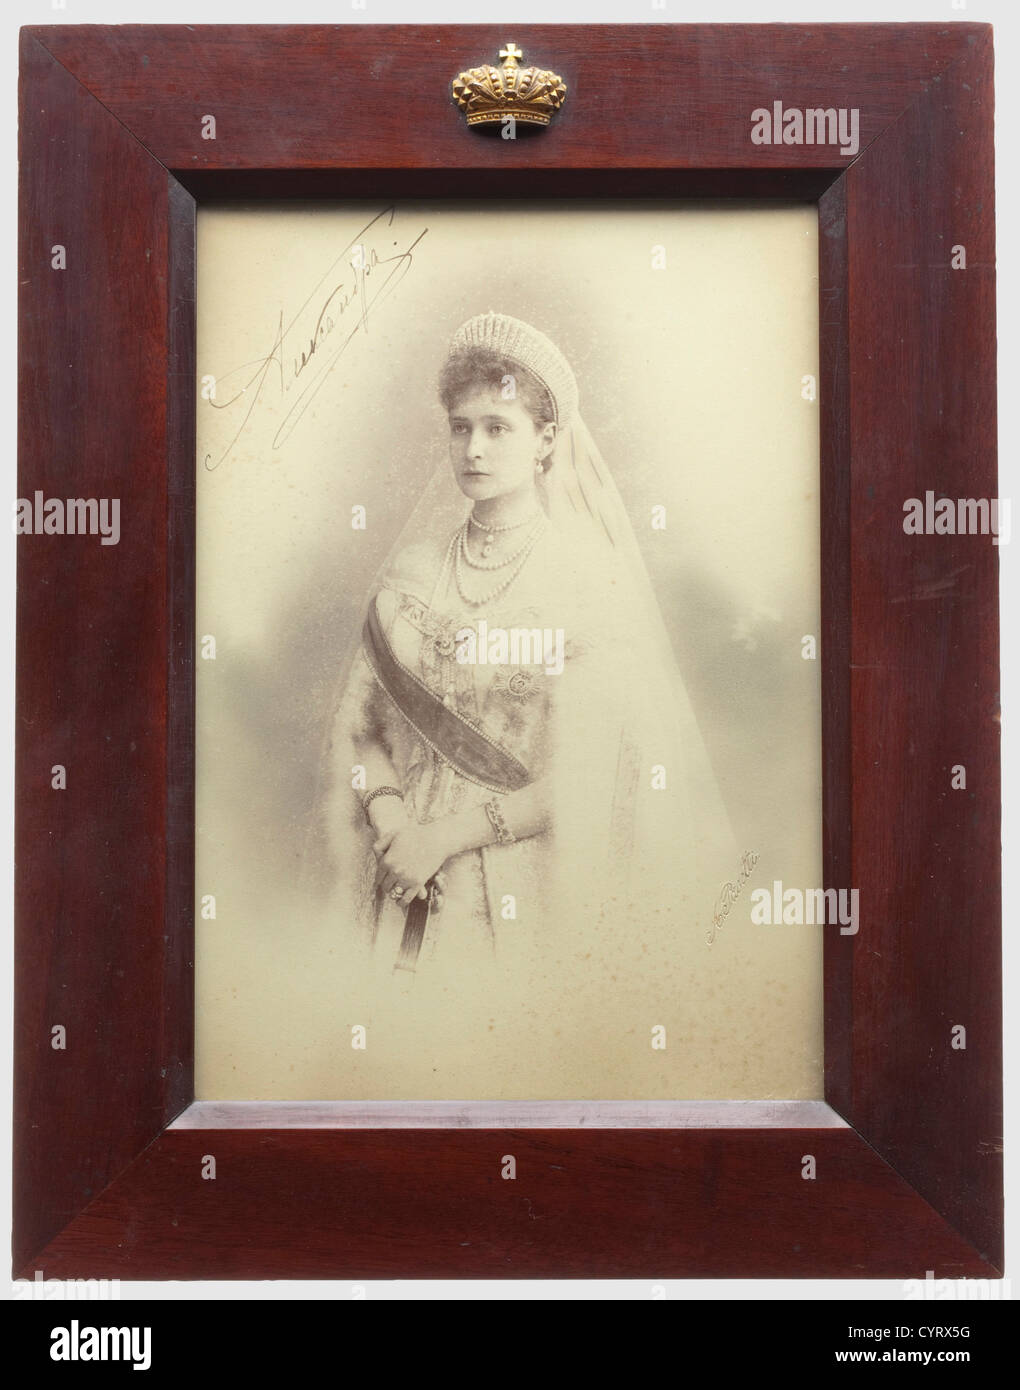 Portraitfoto von Tsarina Alexandra Feodorowna, mit handschriftlicher Unterschrift in Tinte Russland, ca. 1900. Der rechte Rand mit Prägung des Hoffotografen 'A. Pasetti". In Gold auf der Rückseite der Name des Fotografen mit mehreren Medaillen abgedruckt. Leicht gefleckt. Unter Glas, in braun lackiertem Holzrahmen, wurde die Oberseite mit einer goldbronzierten Kaiserkrone aus Messing aufgetragen. Der Rahmenständer hinten fehlt. Bild CA. 21,6 x 15 cm, Rahmen 30,3 x 23,5 cm. Alexander Ivanovich Pasetti studierte an der Sankt Petersburger Kunsthochschule und gewann dort im Jahr 1872 Silbermedaillen und Stockfoto